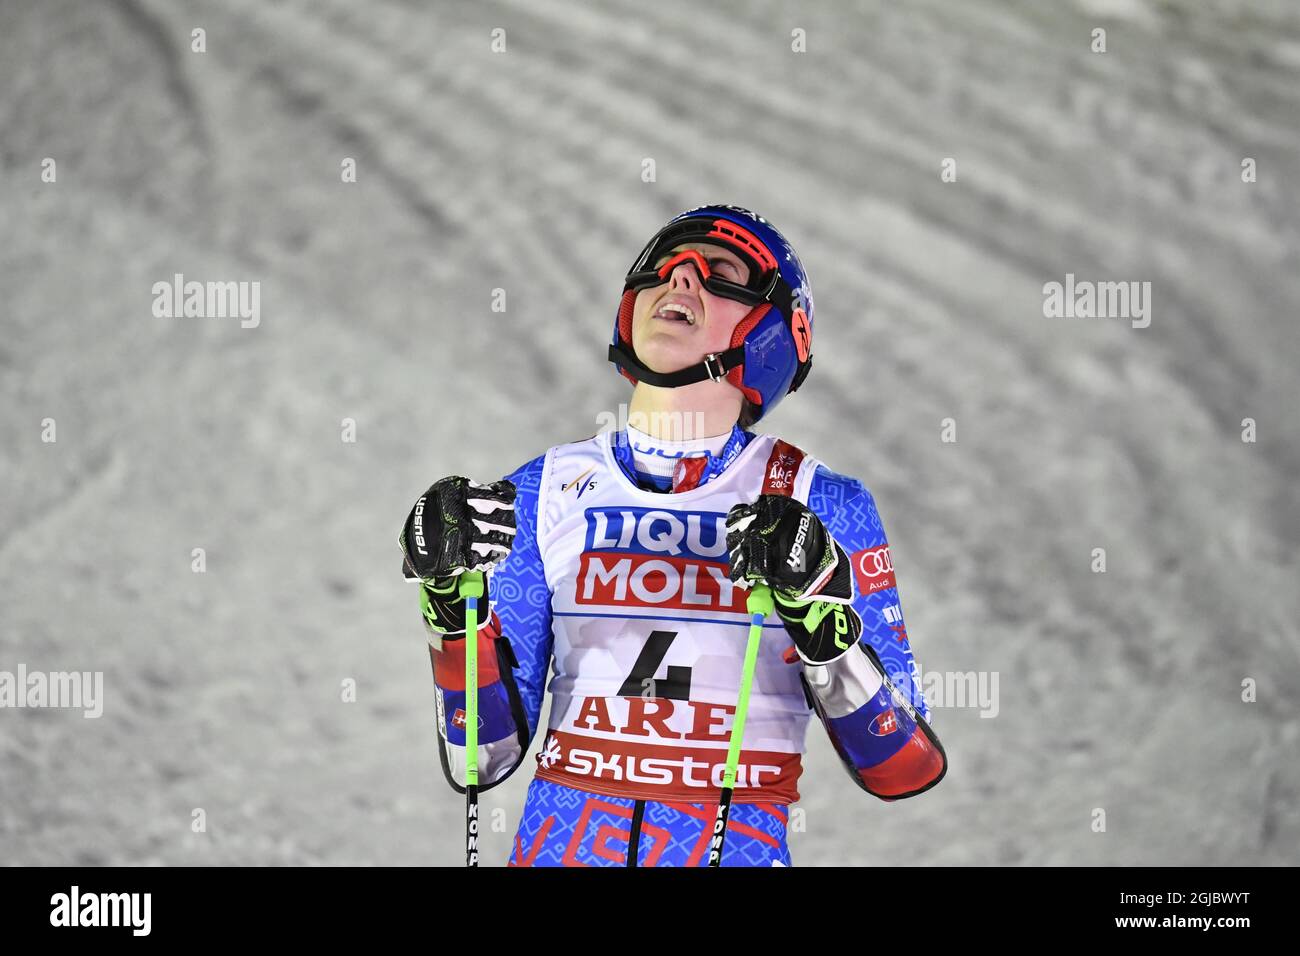 Die slowakische Petra Vlhova gewann den Riesenslalom der Frauen bei den FIS Alpinen Ski-Weltmeisterschaften in Are, Schweden, am 14. Februar 2019. Foto: Anders Wiklund/ TT Stockfoto